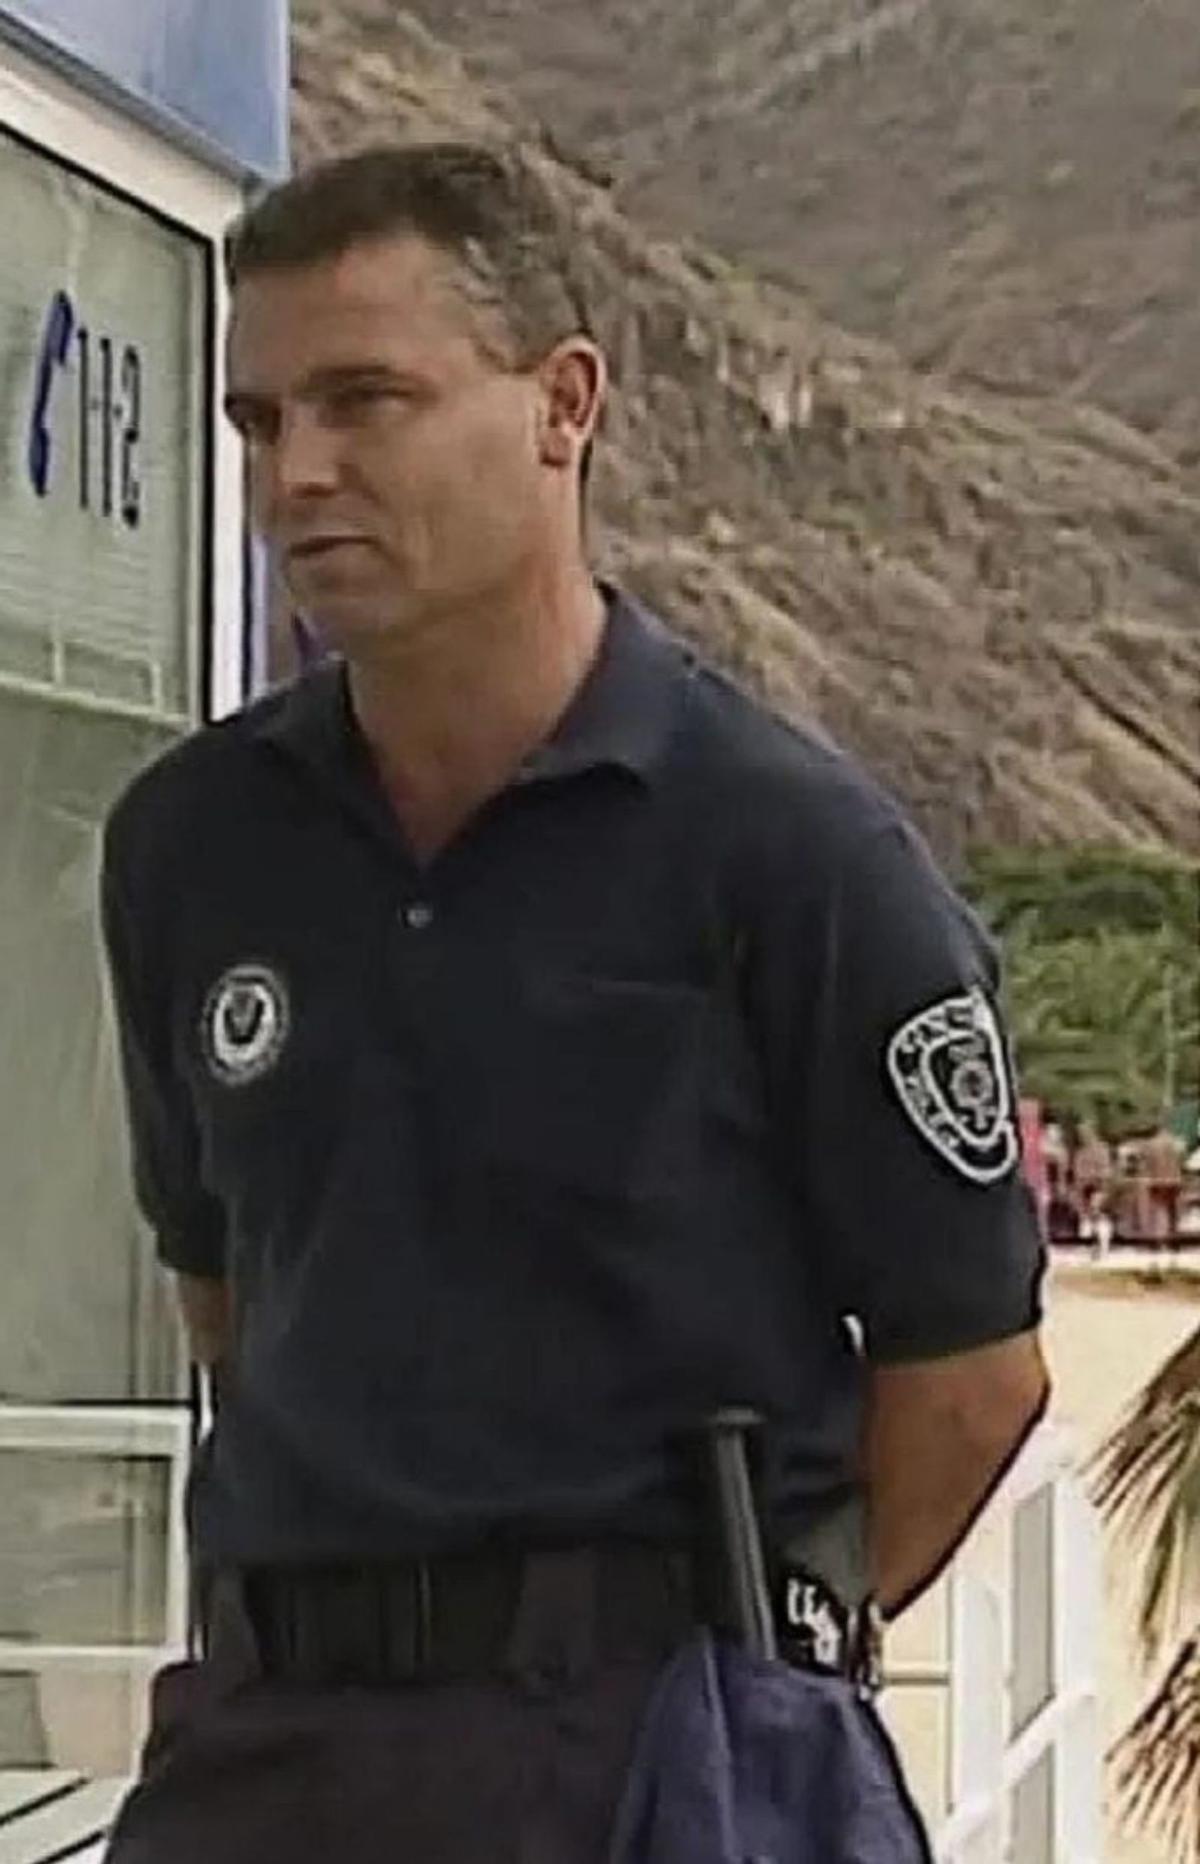 Al límite de los 30 años, edad máxima permitida para entrar en la Policía local, Blas Hernández superó las oposiciones de acceso al Cuerpo de Seguridad local de Santa Cruz. En su gestión, participó en la creación de la Policía Autonómica de Canarias, en 2020. | e.d.